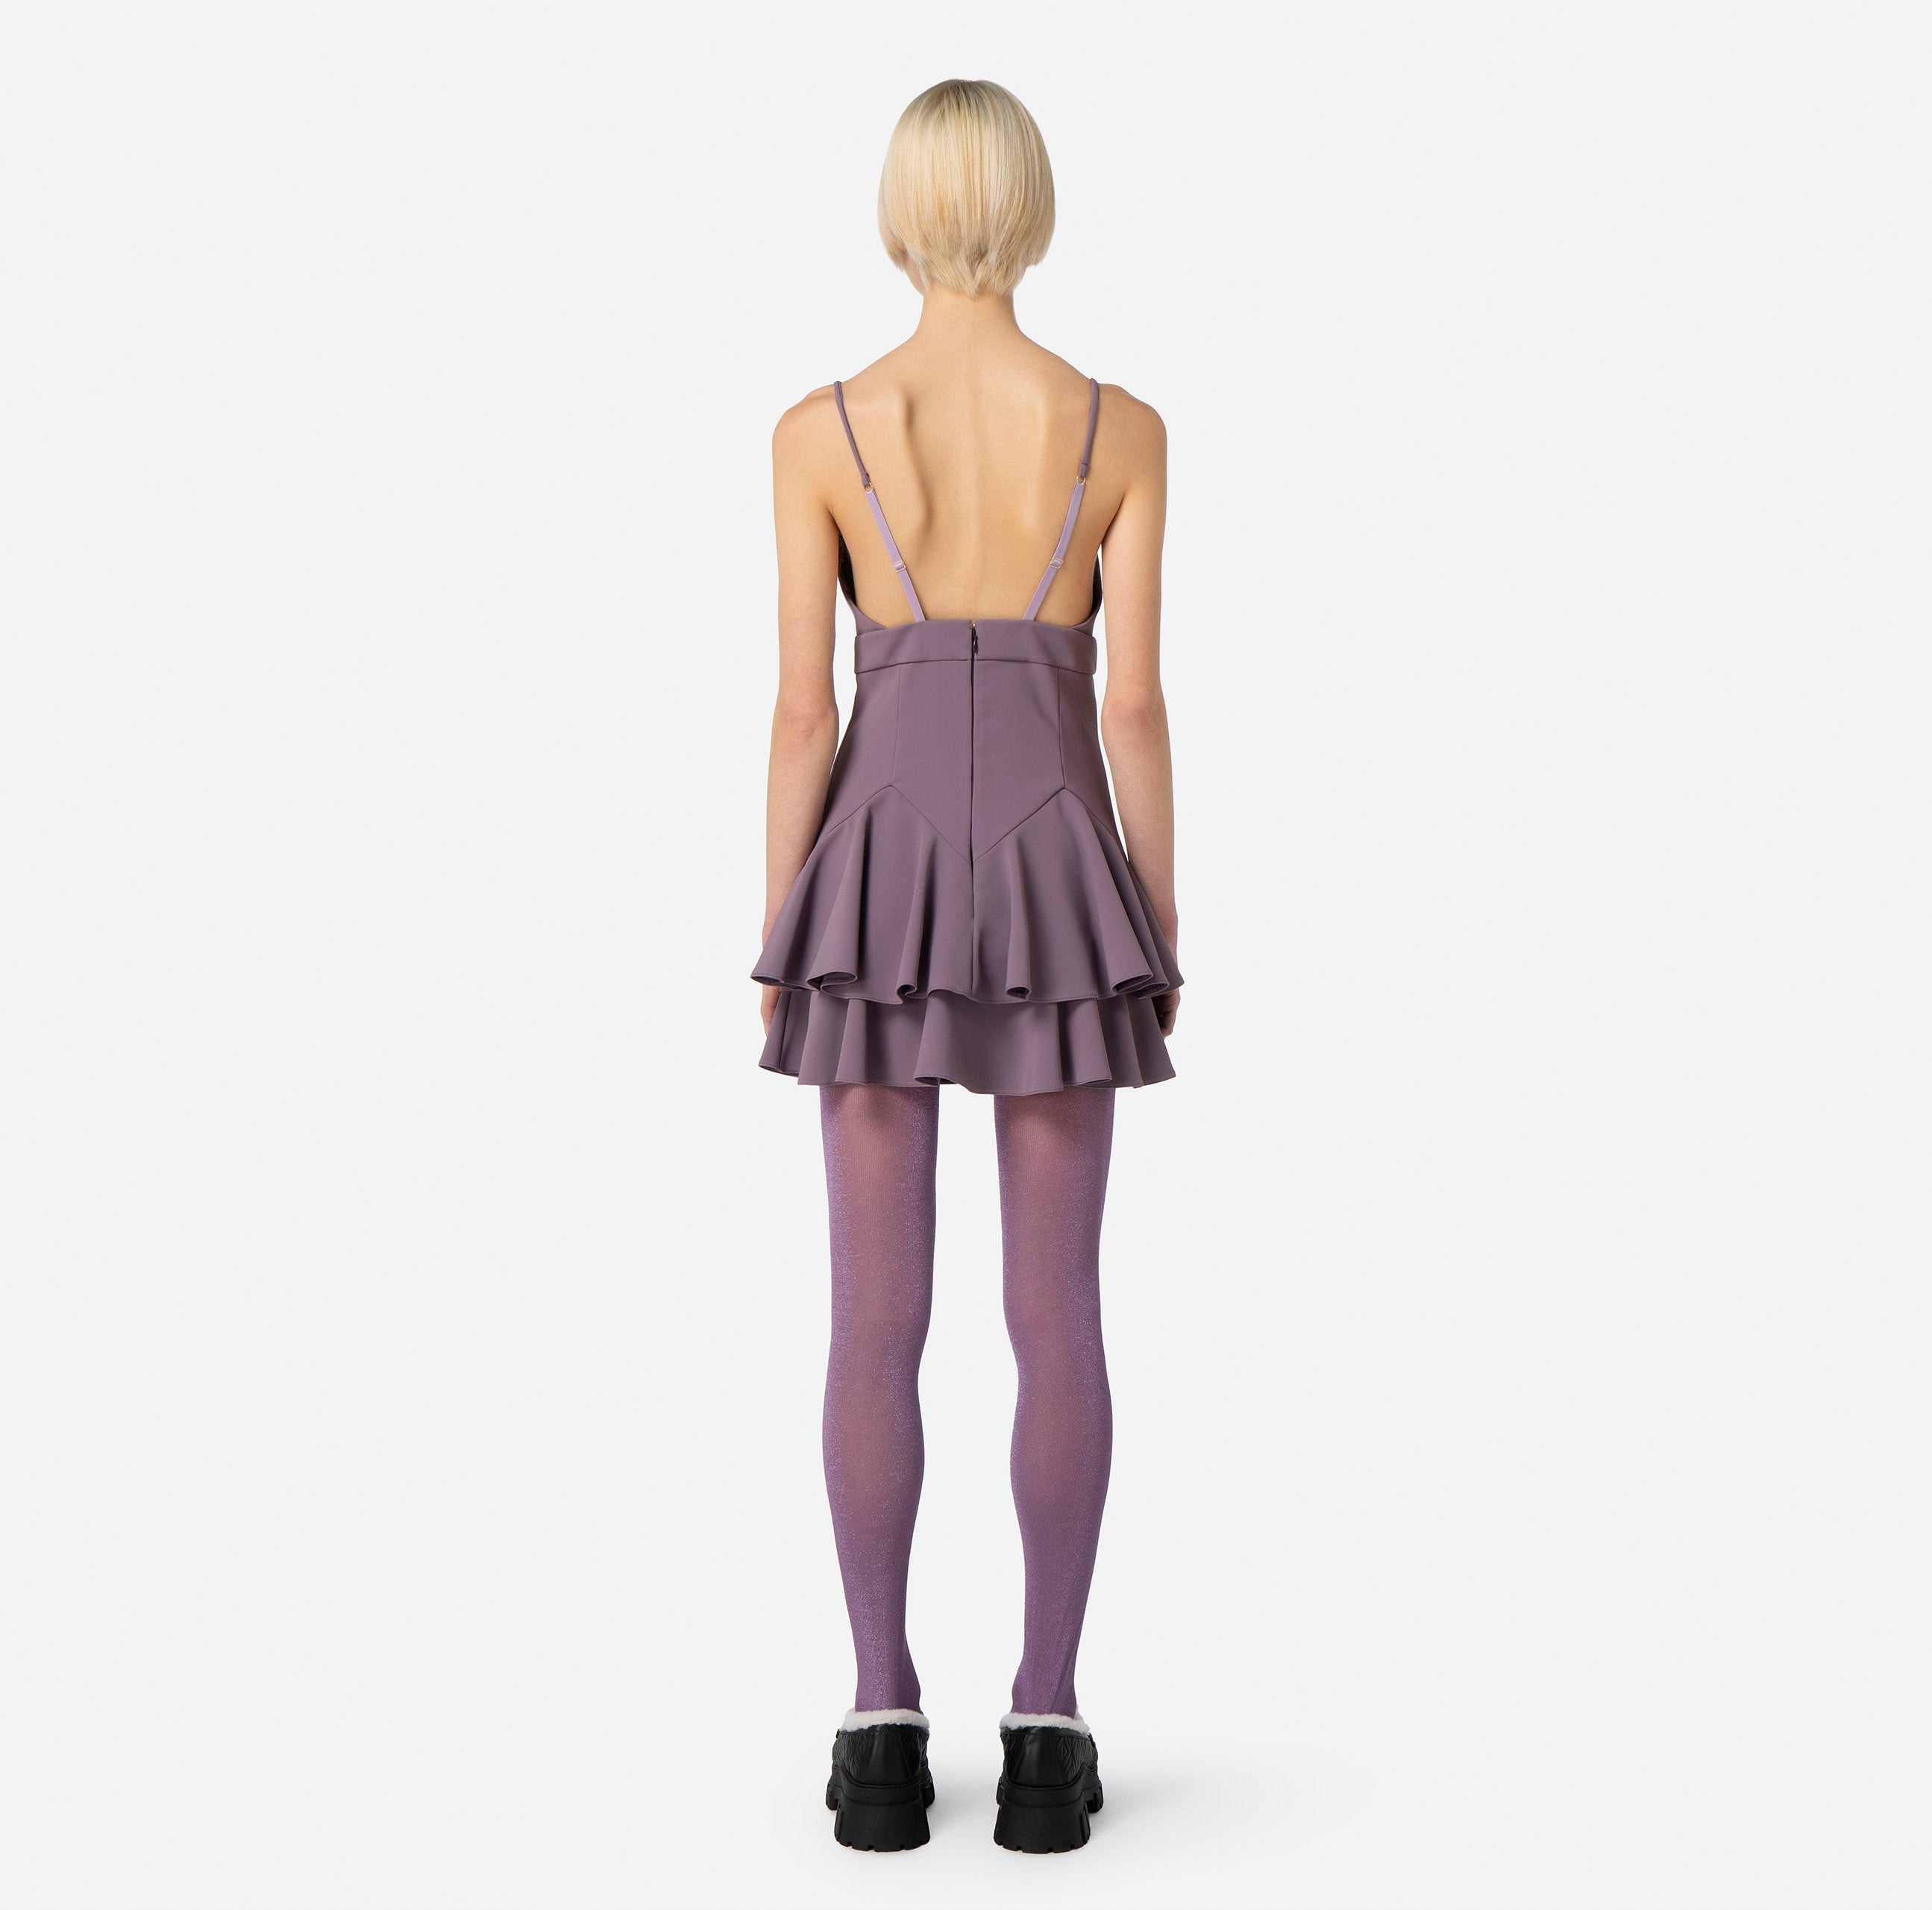 Elisabetta Franchi Women's Dress AB41036E2 Candy violet